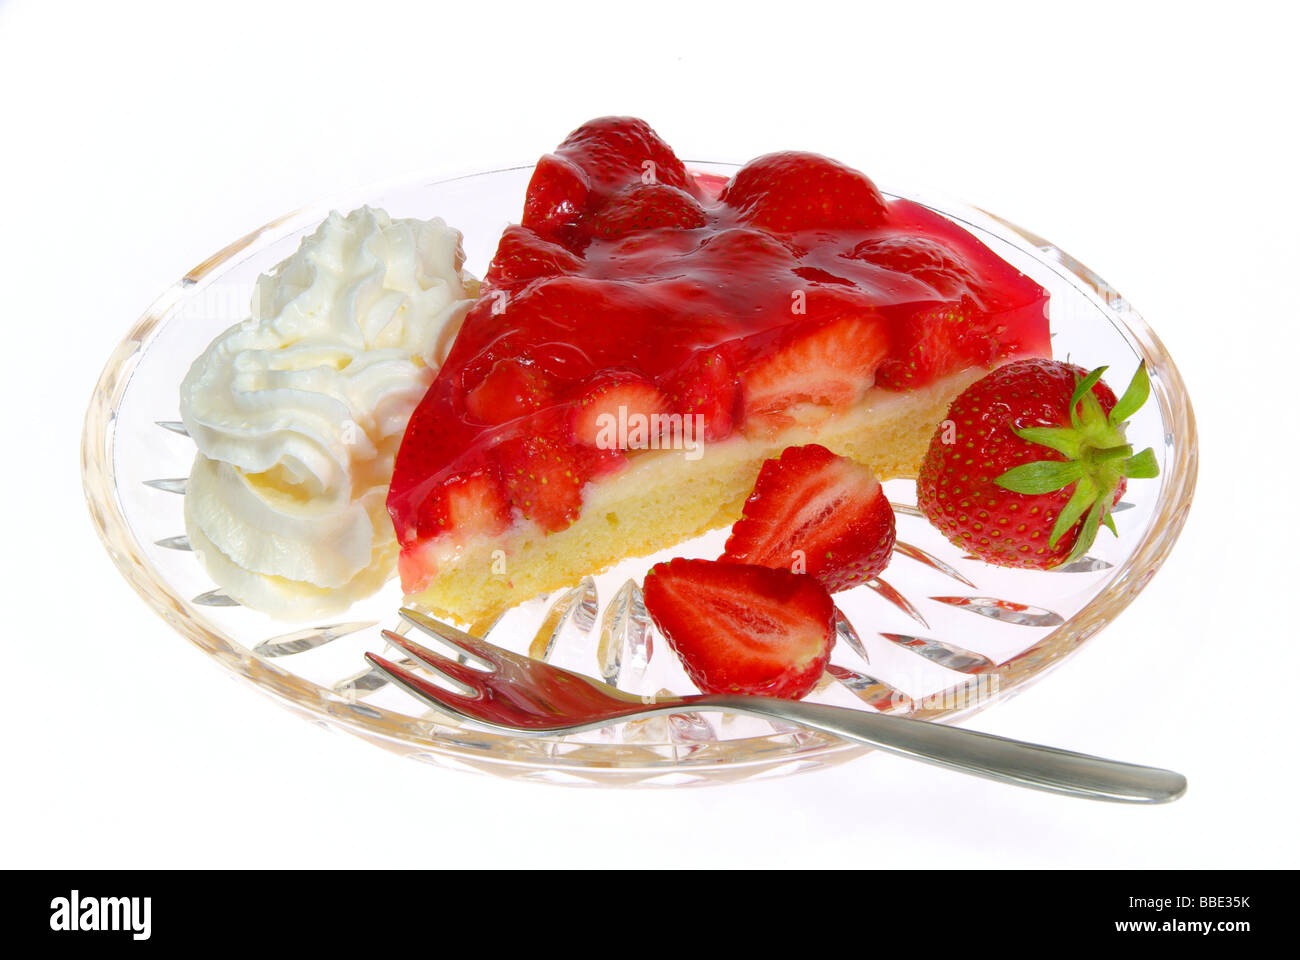 Erdbeertorte strawberry cake 02 Stock Photo